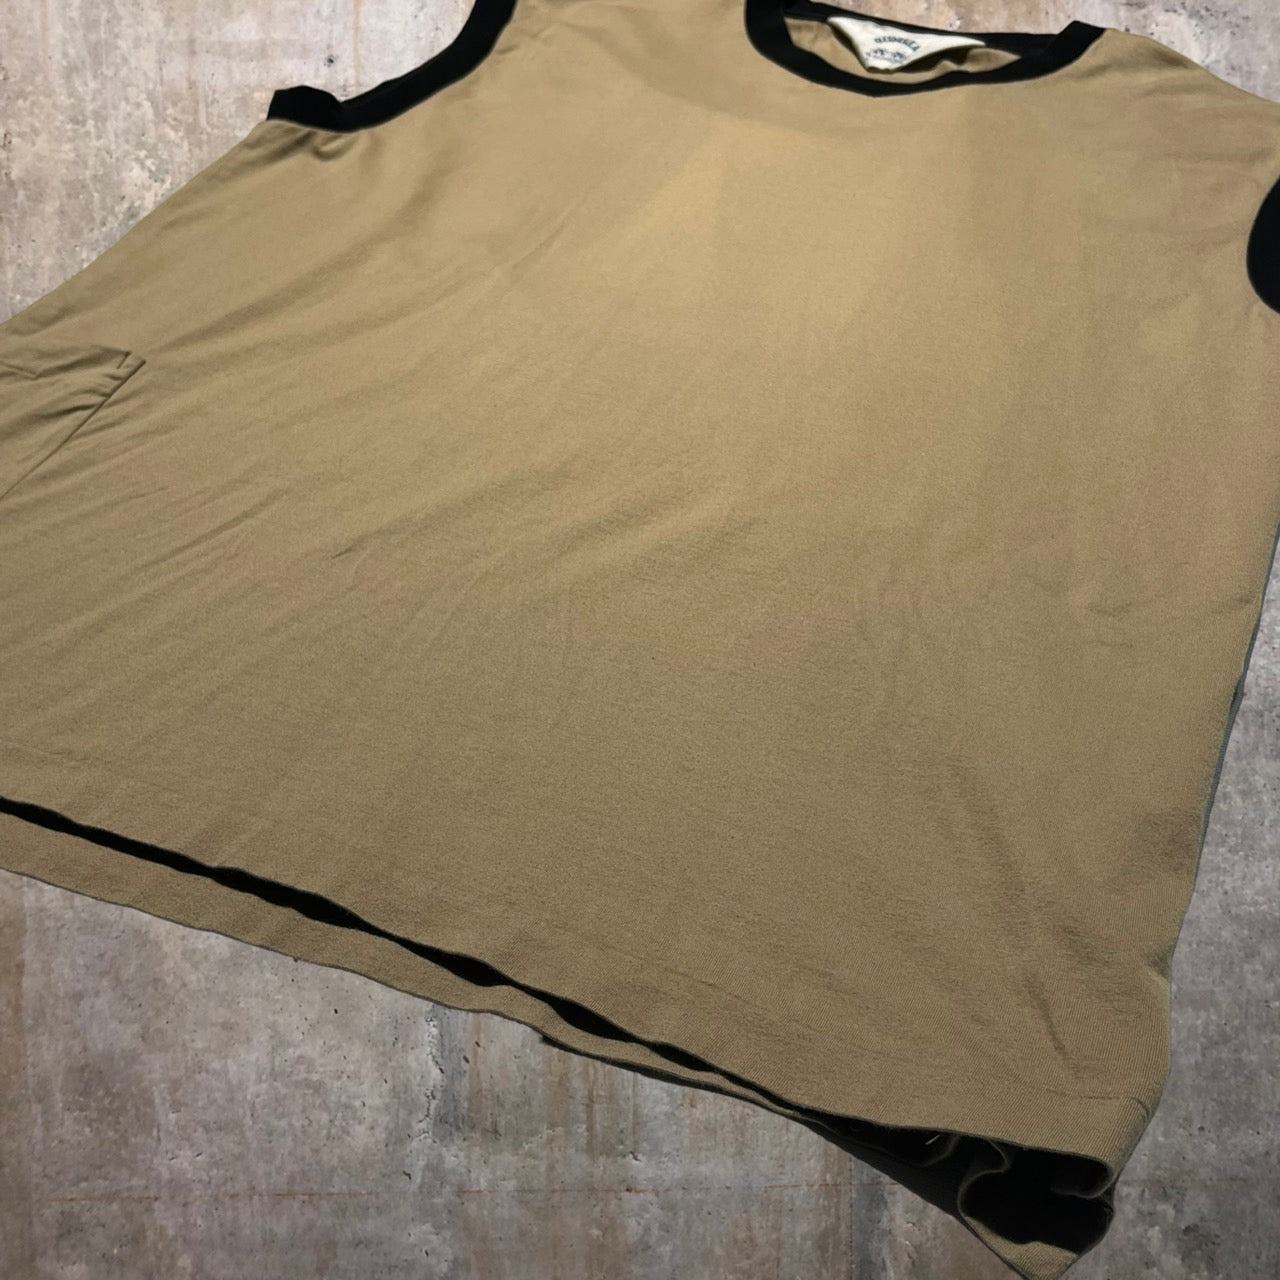 SUNSEA(サンシー) 18SSバイカラーノースリーブTシャツ 18S05 3(Lサイズ程度) ベージュ